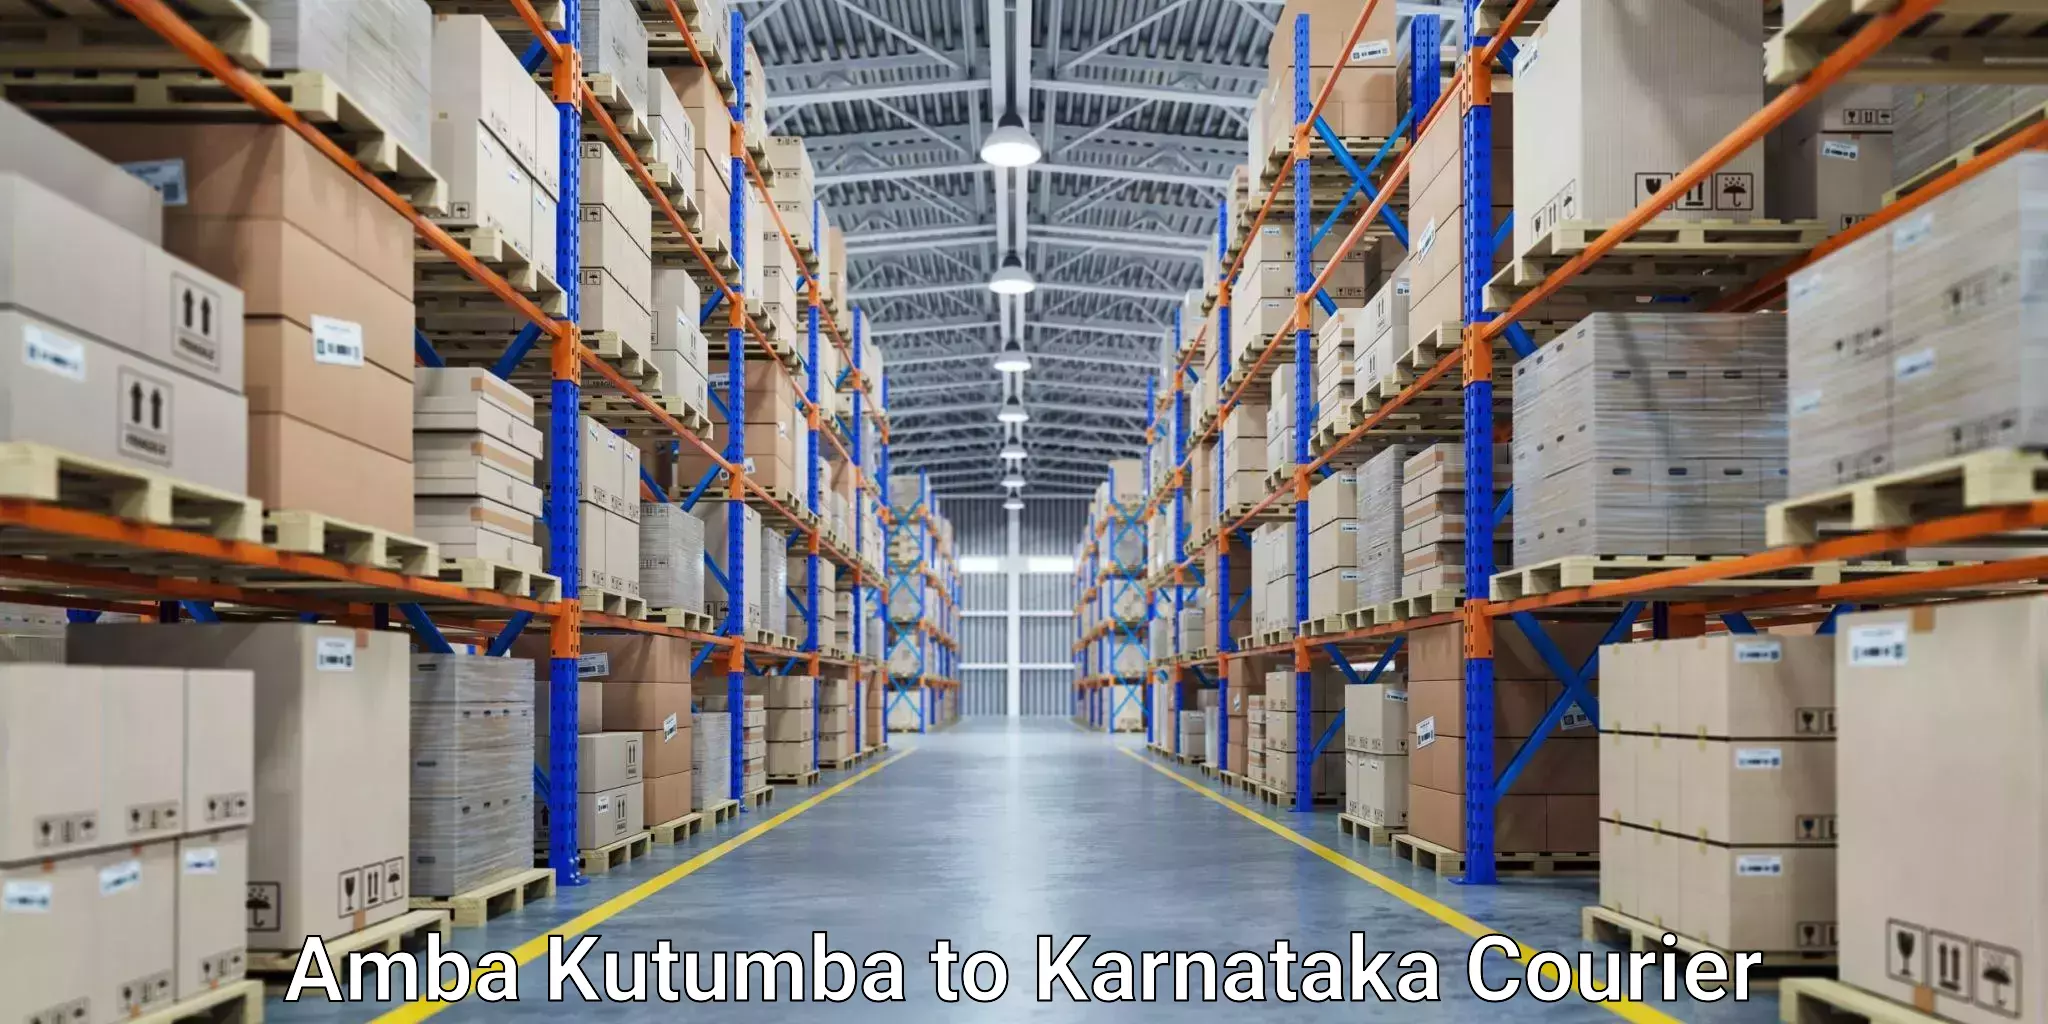 On-call courier service Amba Kutumba to Bangalore